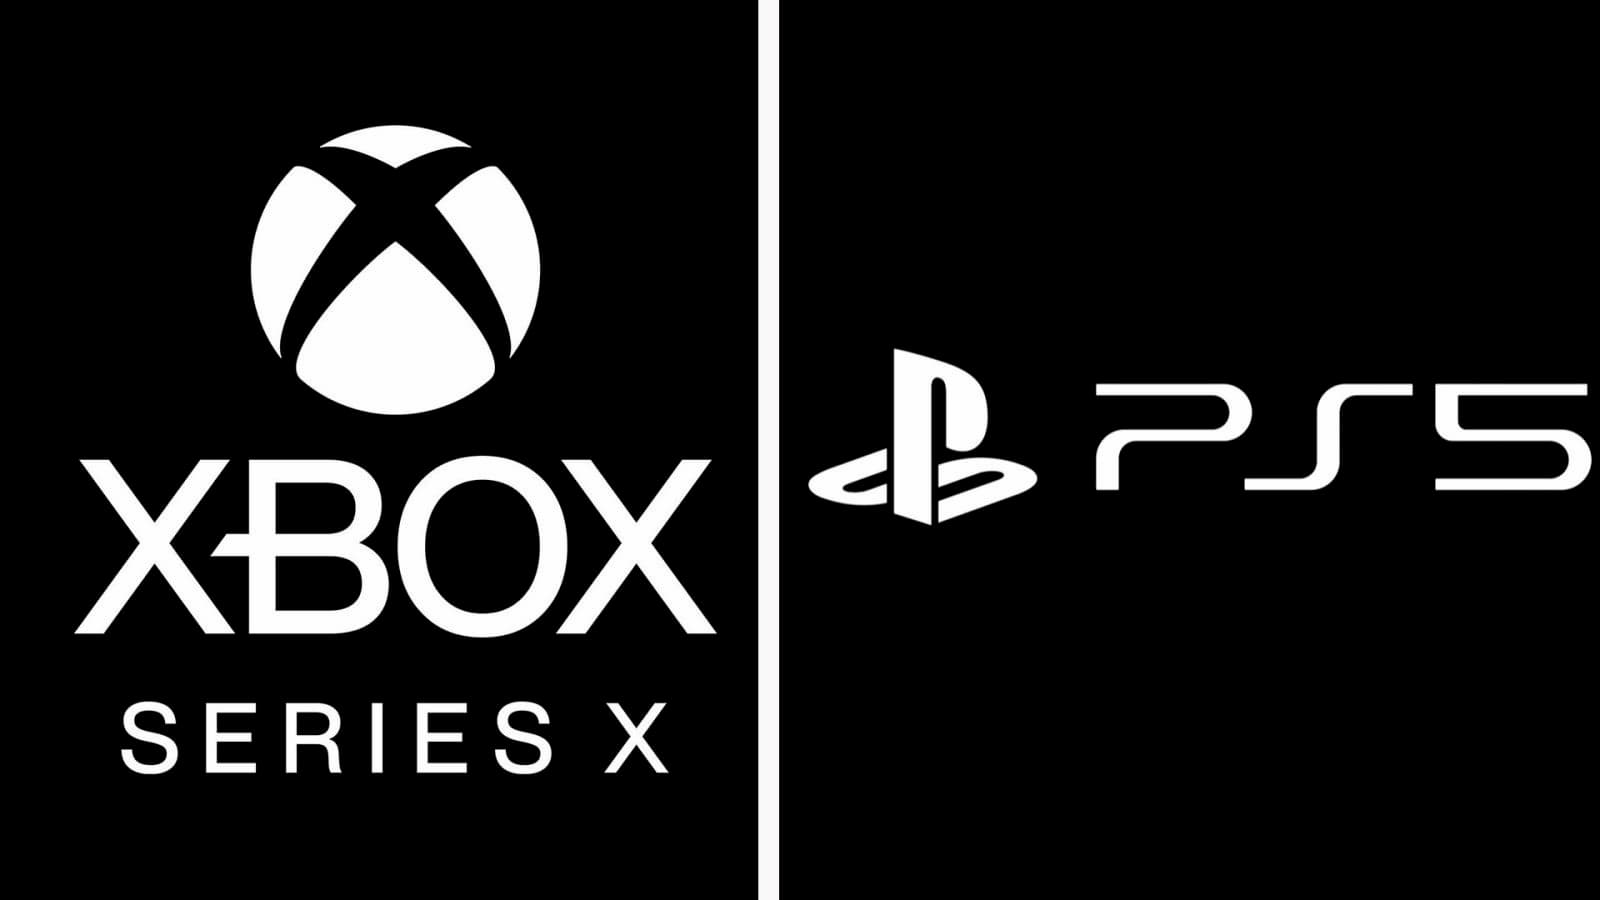 Logos do Xbox Series X e do PS5